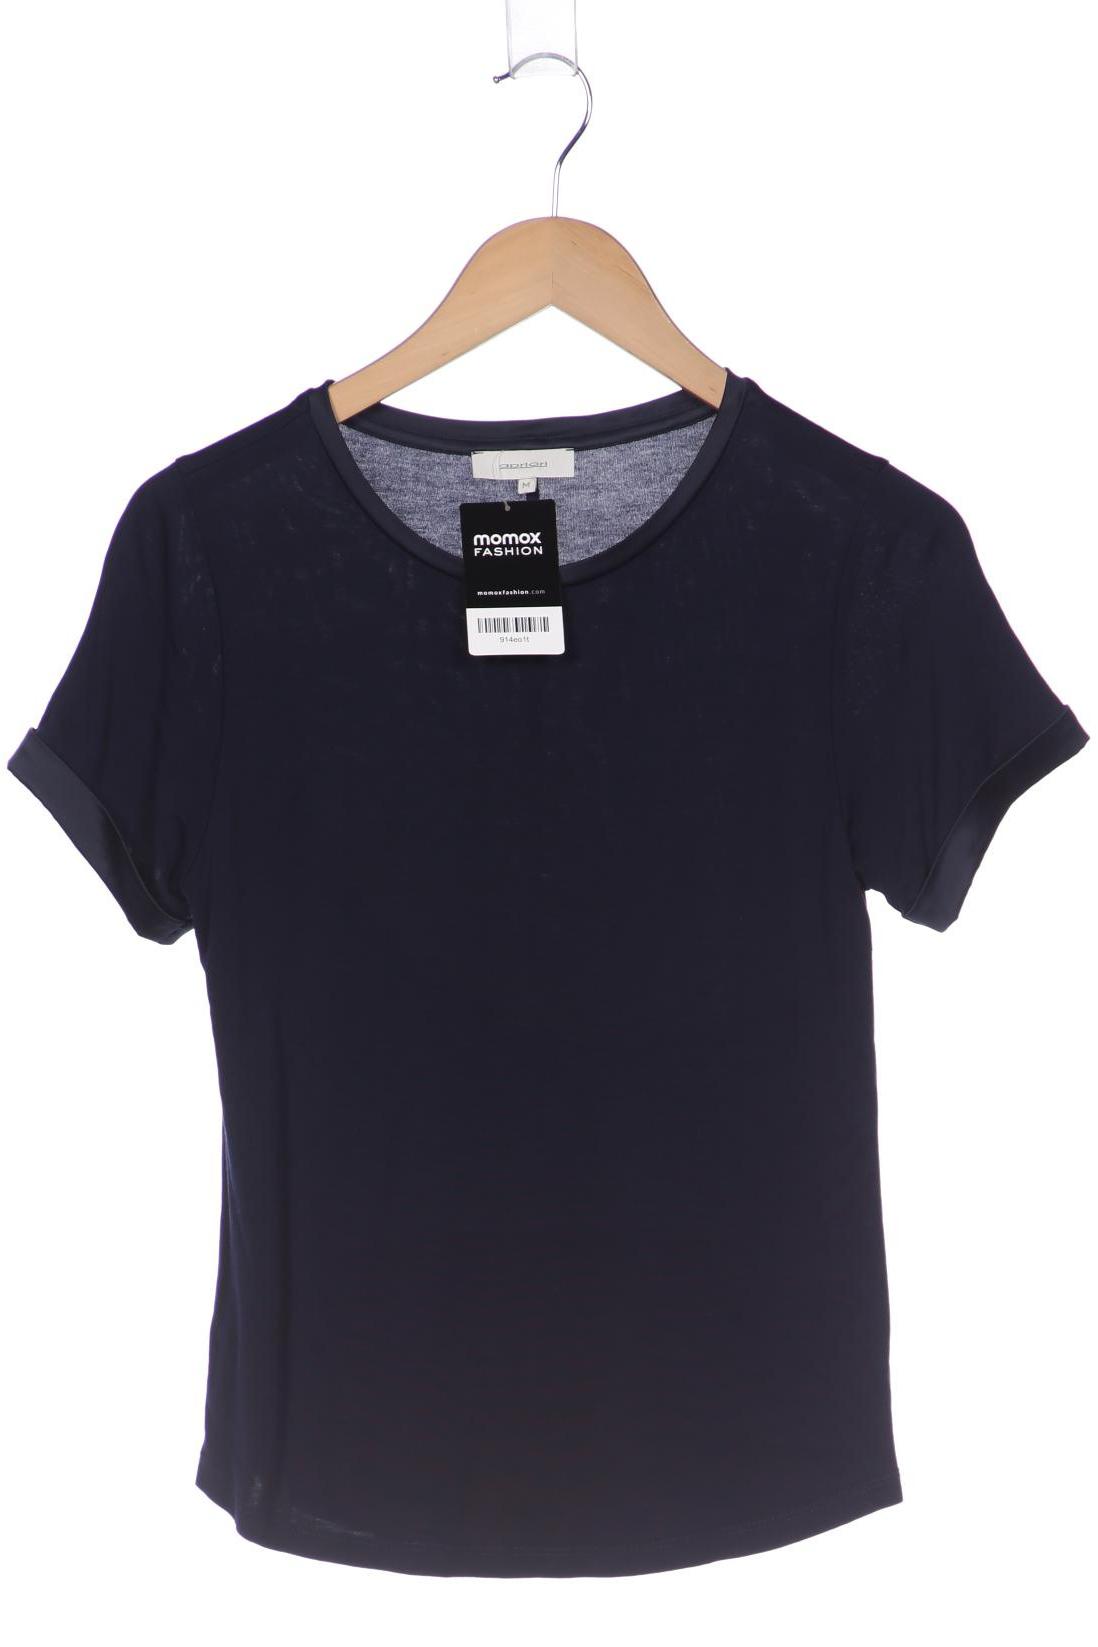 Apriori Damen T-Shirt, marineblau, Gr. 38 von Apriori